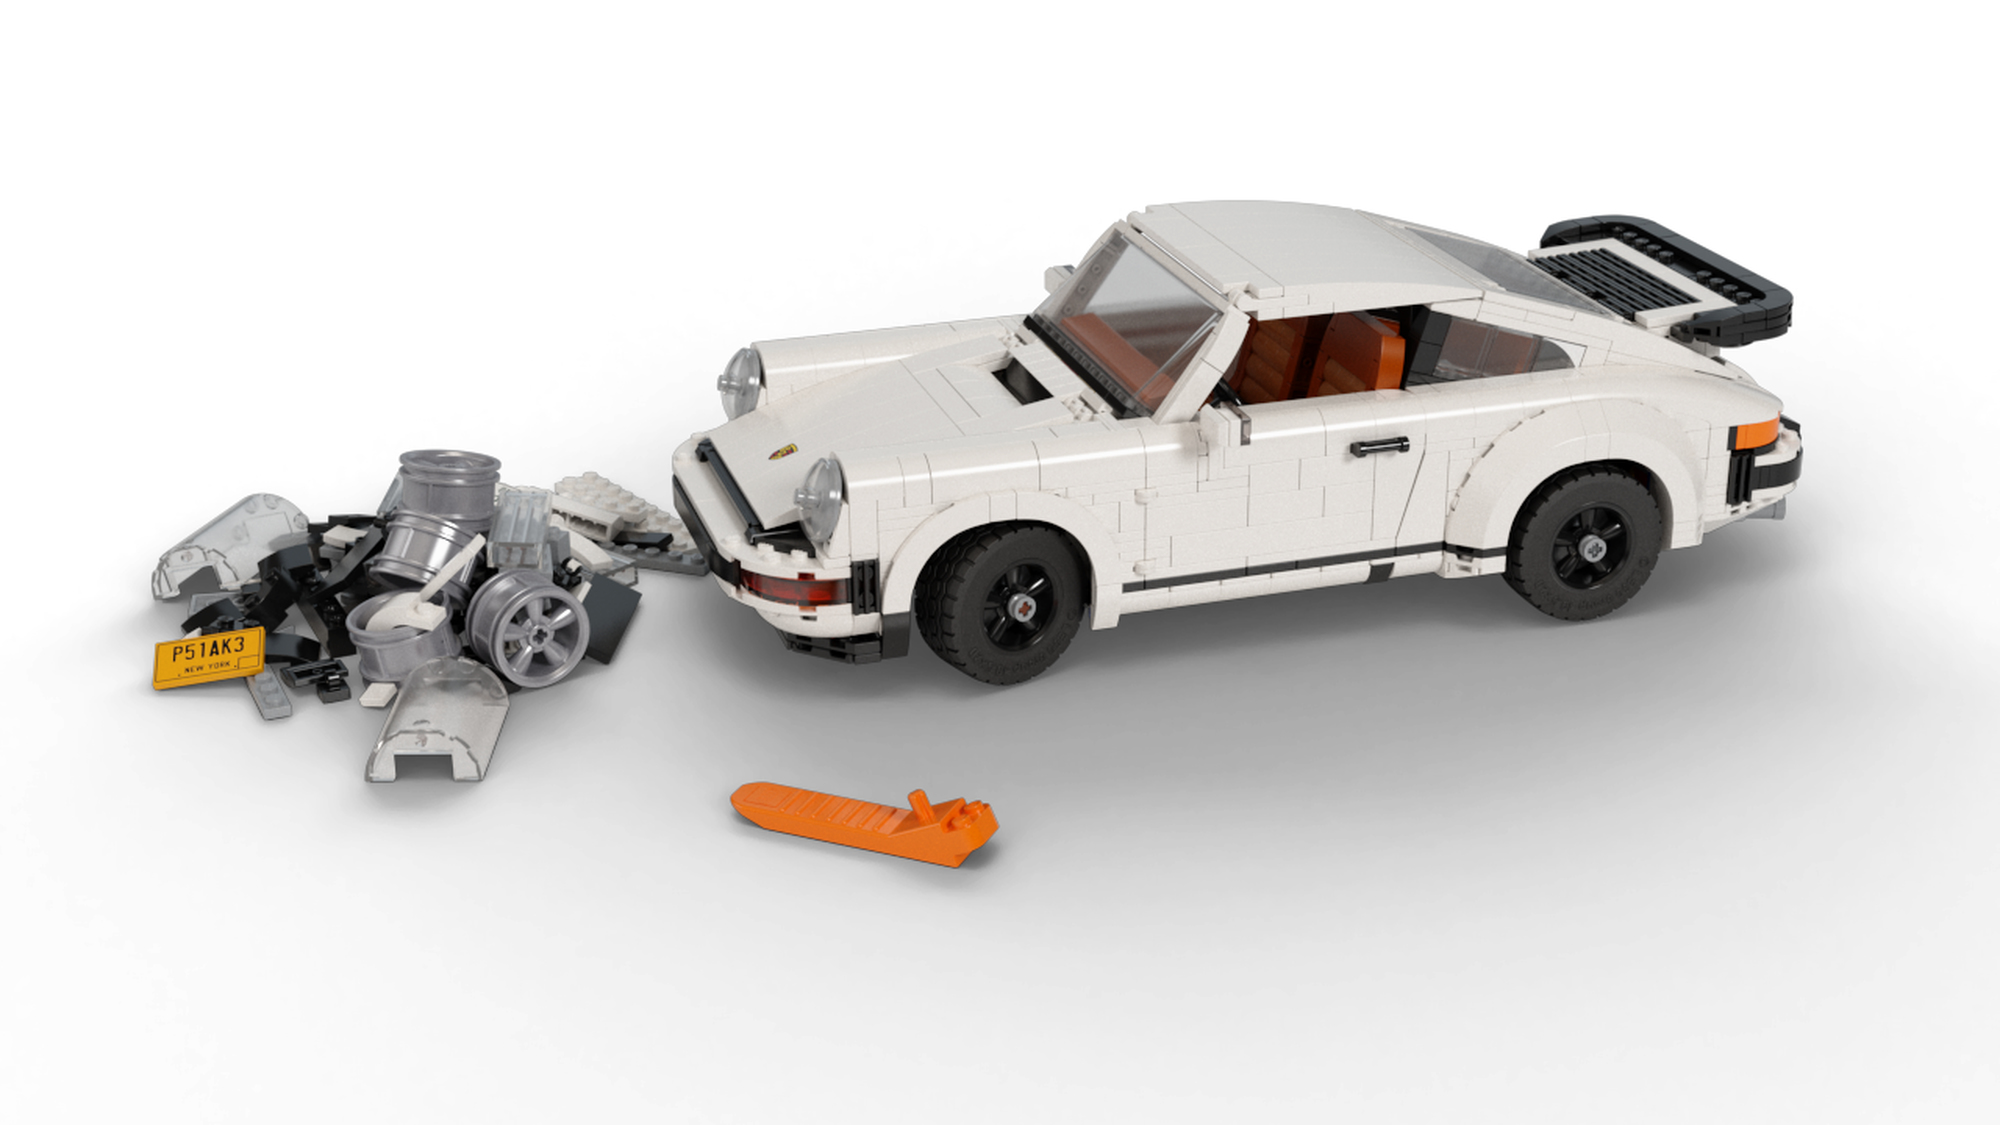 LEGO Creator Porsche 911